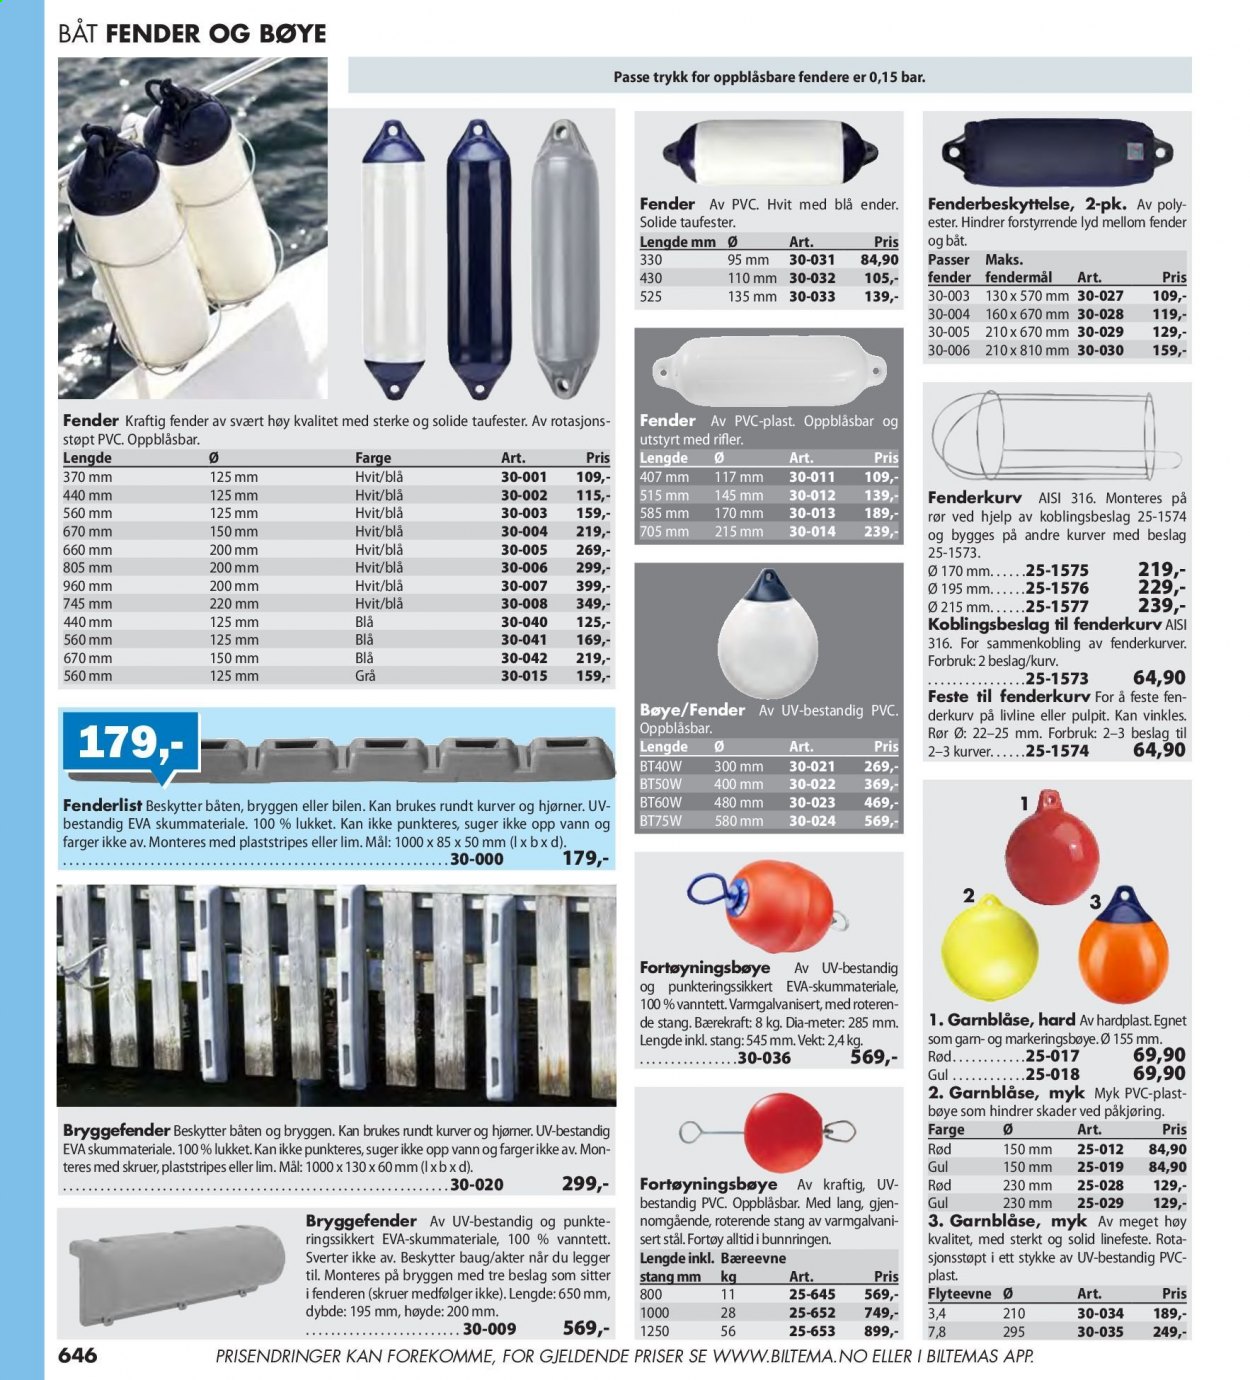 thumbnail - Kundeavis Biltema - Produkter fra tilbudsaviser - kurv, garn, skruer. Side 646.